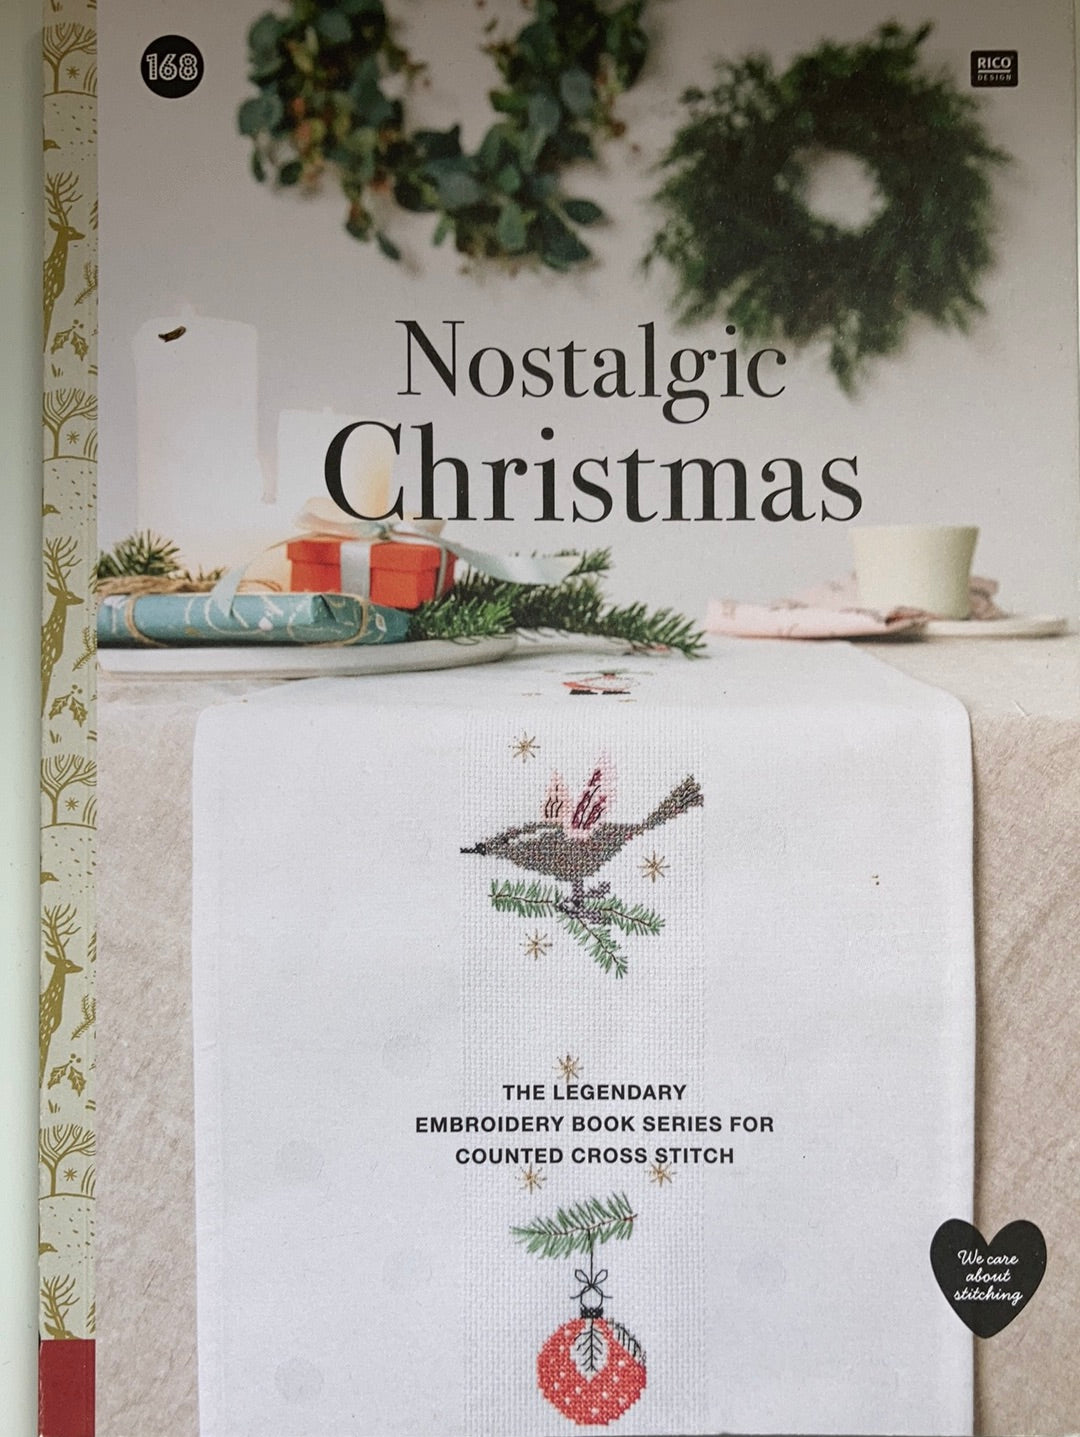 Book 168 Nostalgic Christmas